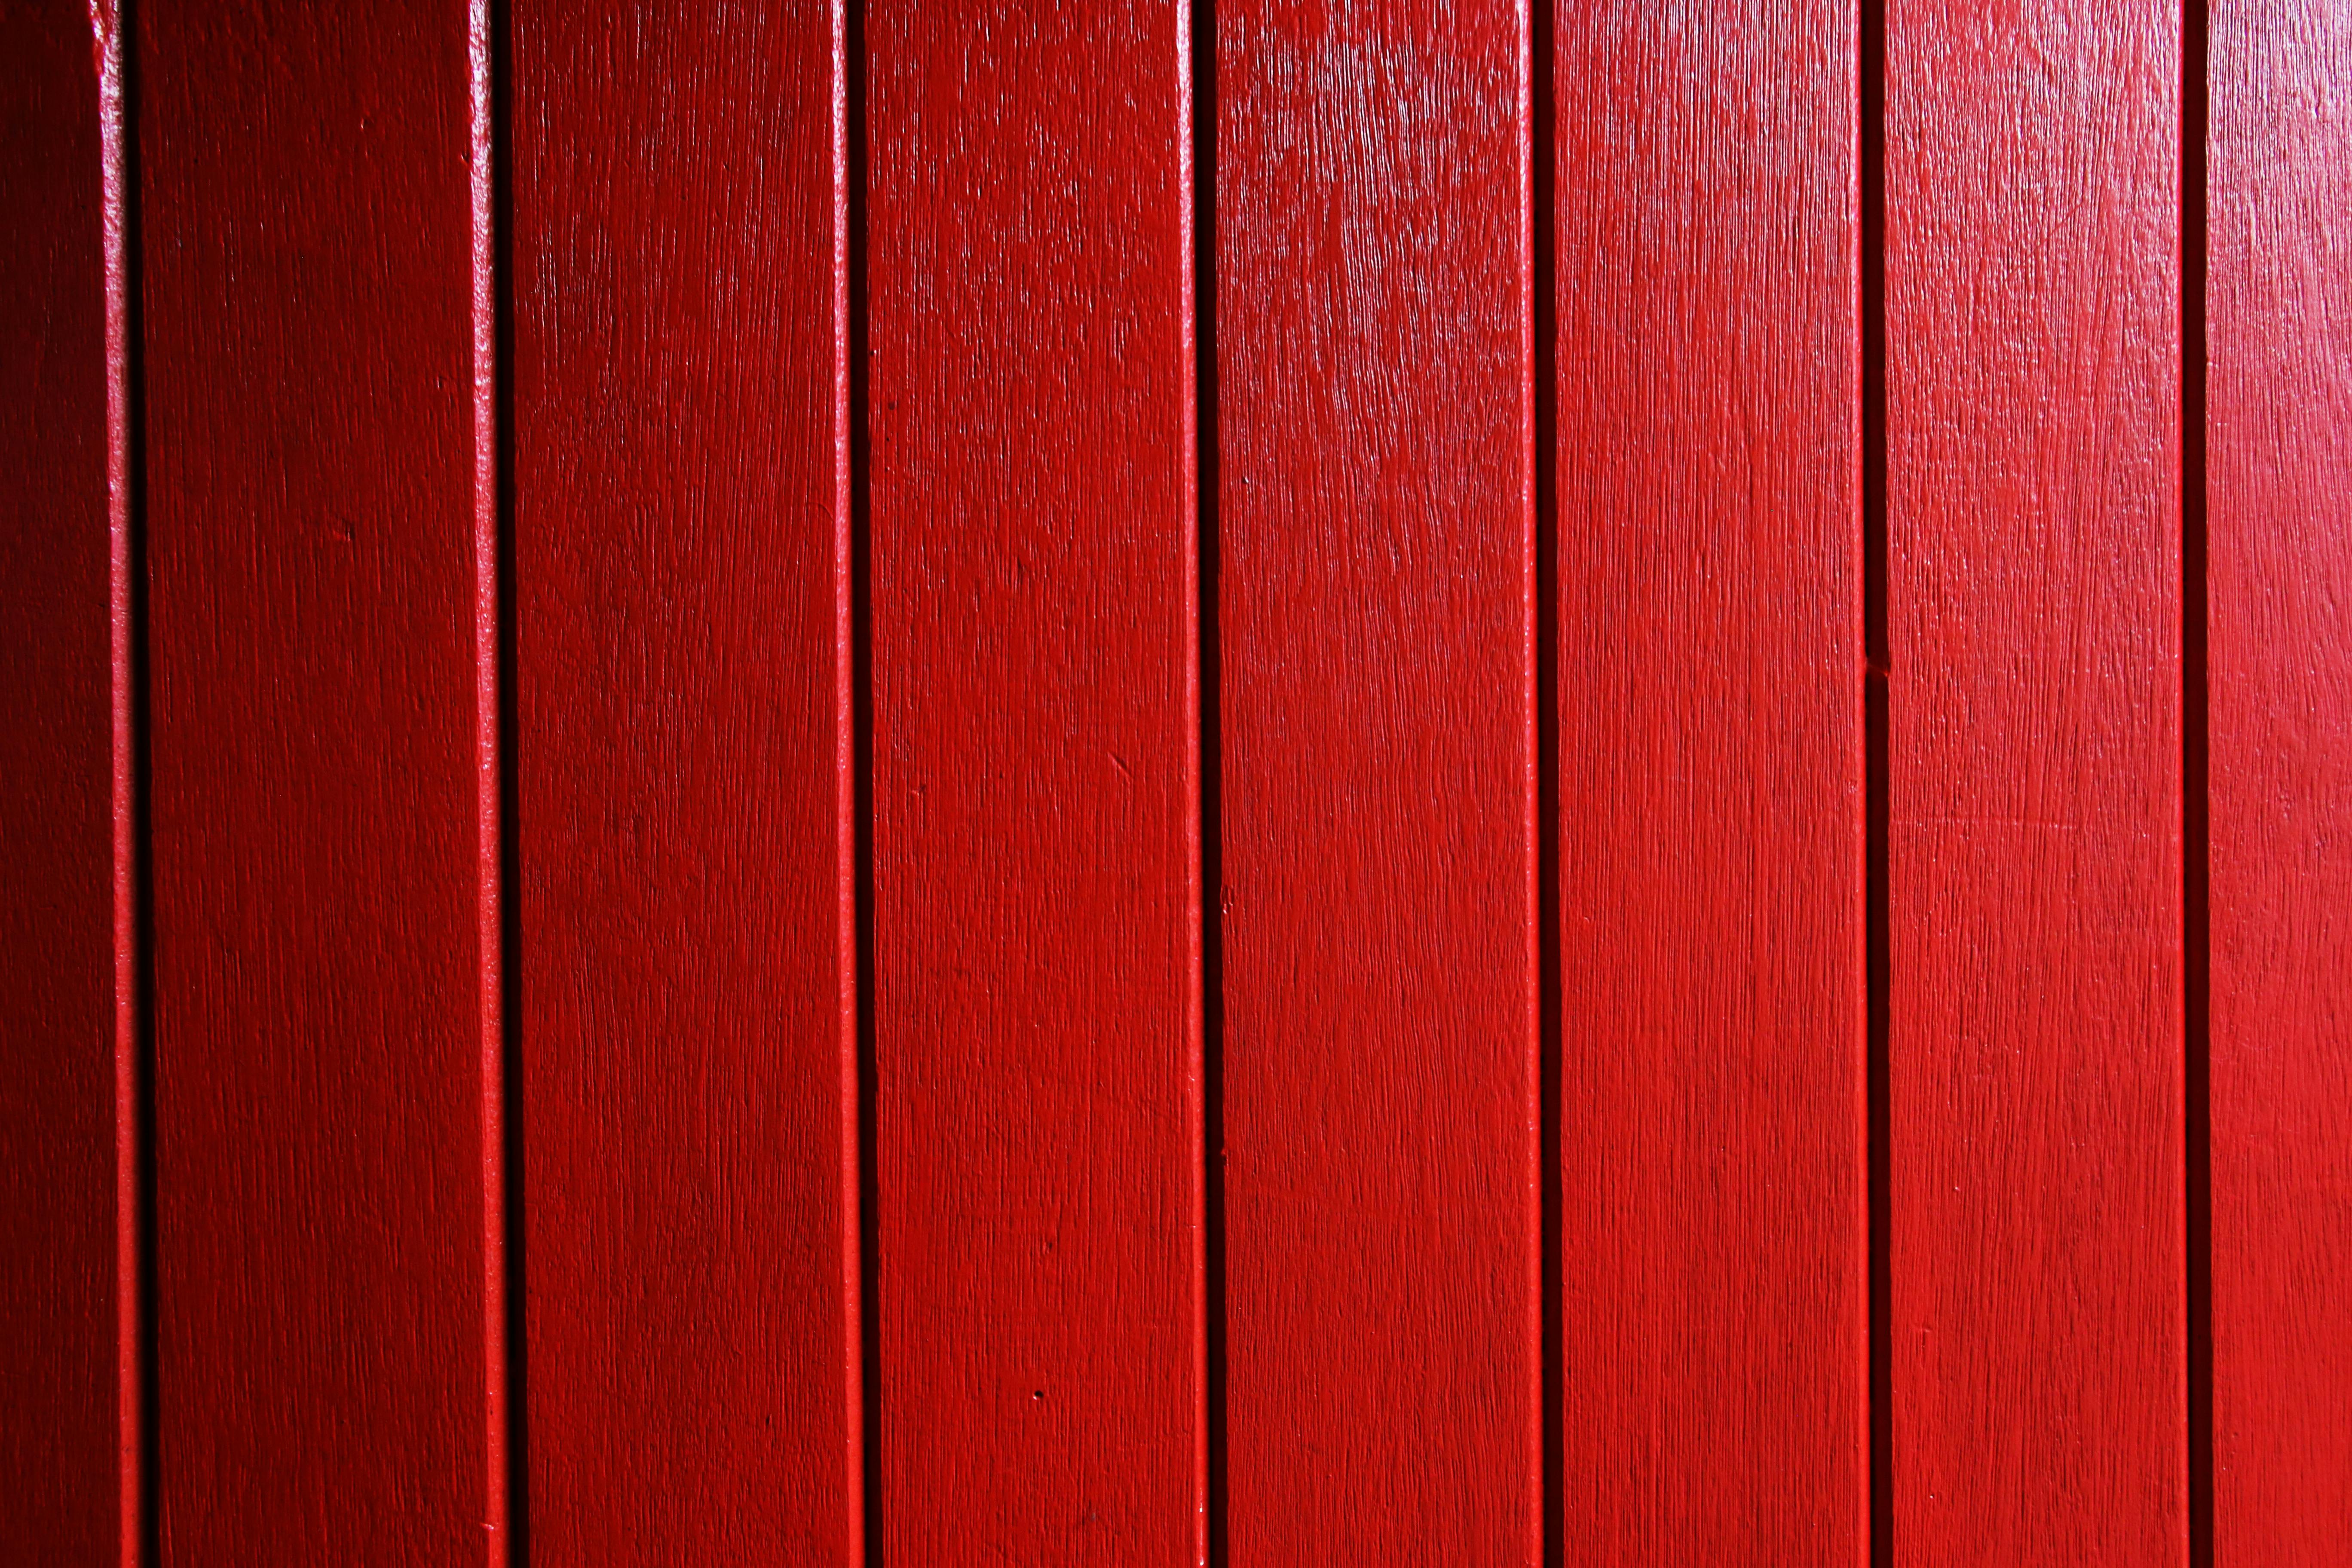 Bề mặt gỗ đỏ: Cảm nhận sự quyến rũ của bề mặt gỗ đỏ trong hình ảnh này. Với nét đẹp đặc trưng và màu sắc đậm nét, bề mặt gỗ đỏ sẽ tạo ra một không gian làm việc đầy sức sống và táo bạo. Khám phá hình ảnh này và cùng tạo ra một không gian làm việc tuyệt vời nhất cho bản thân.